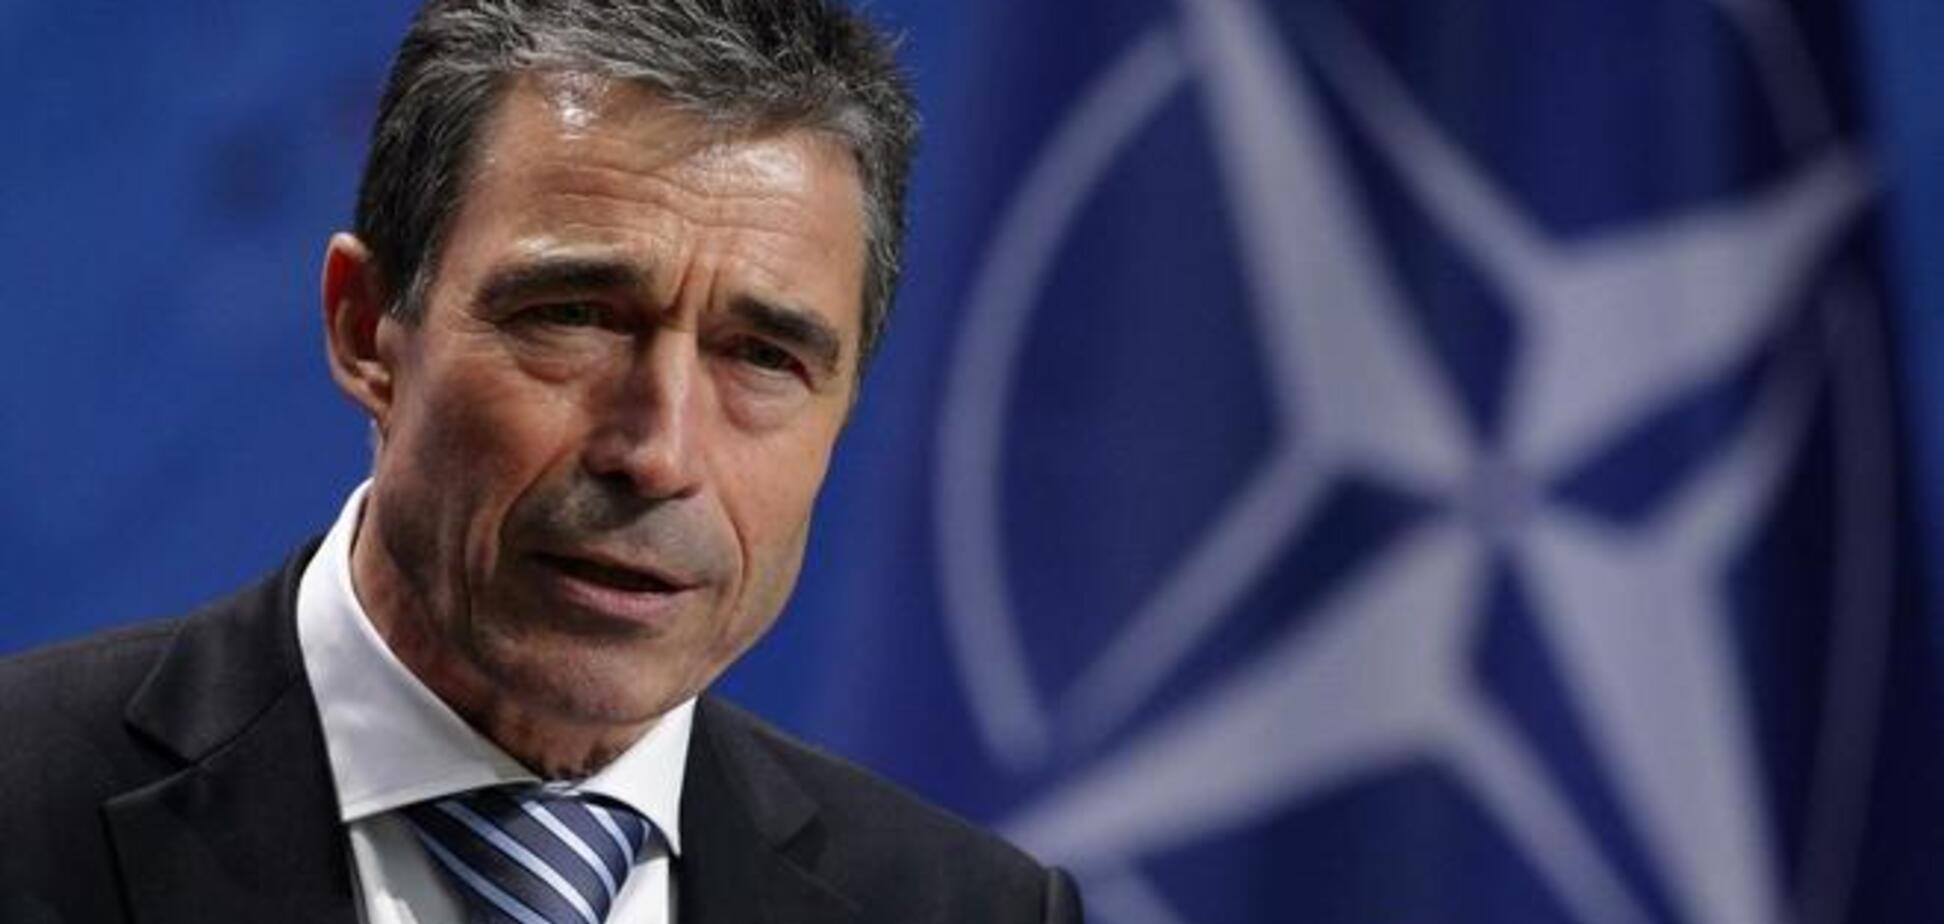 НАТО готово принять дополнительные меры для сдерживания России